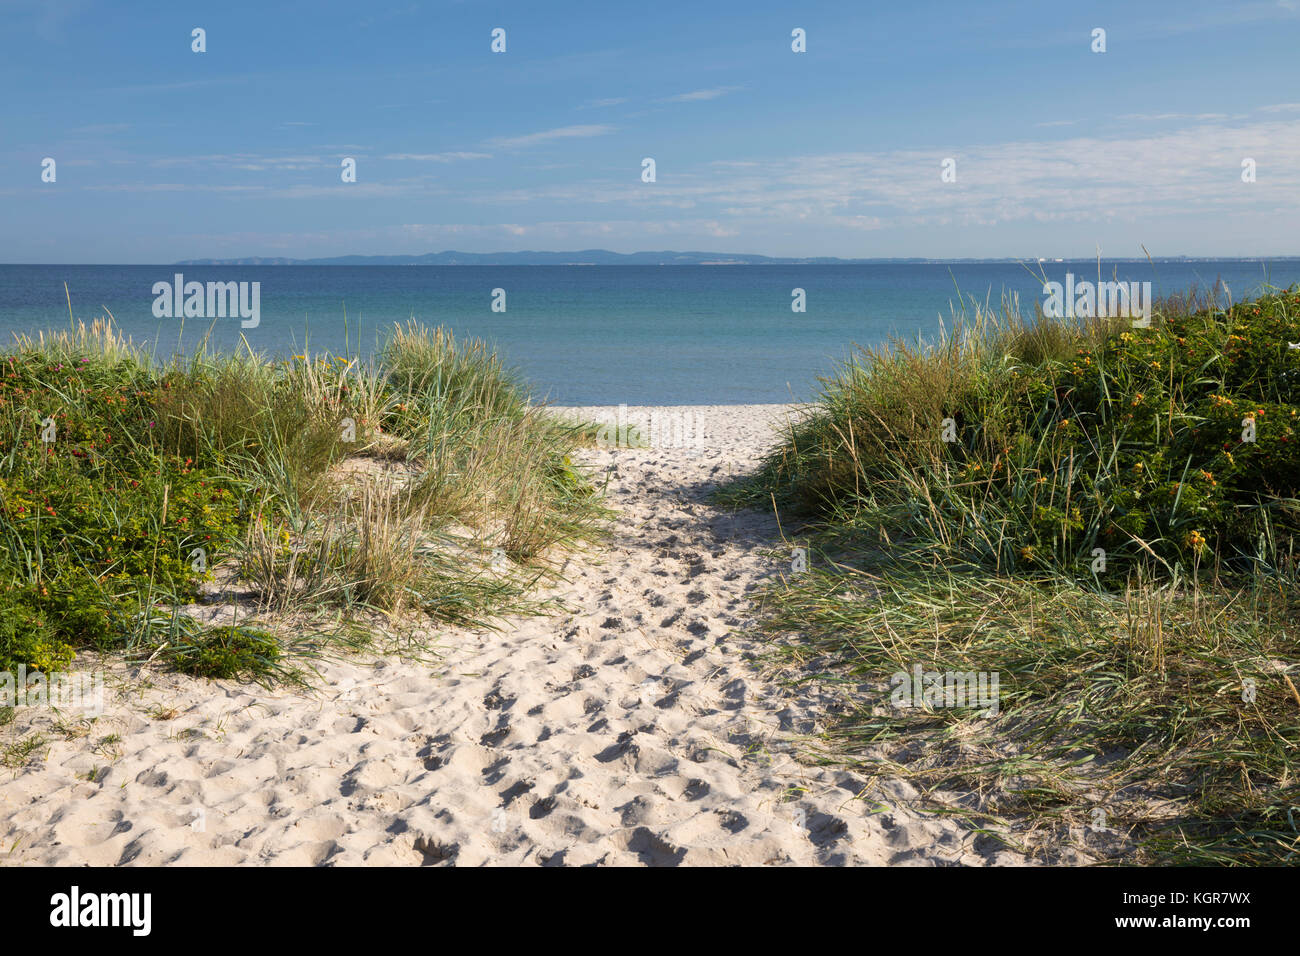 Hornbaek spiaggia con sabbia fine e bianca e dune di sabbia con mare blu dietro, Hornbaek, Kattegat Costa, Zelanda, Danimarca, Europa Foto Stock